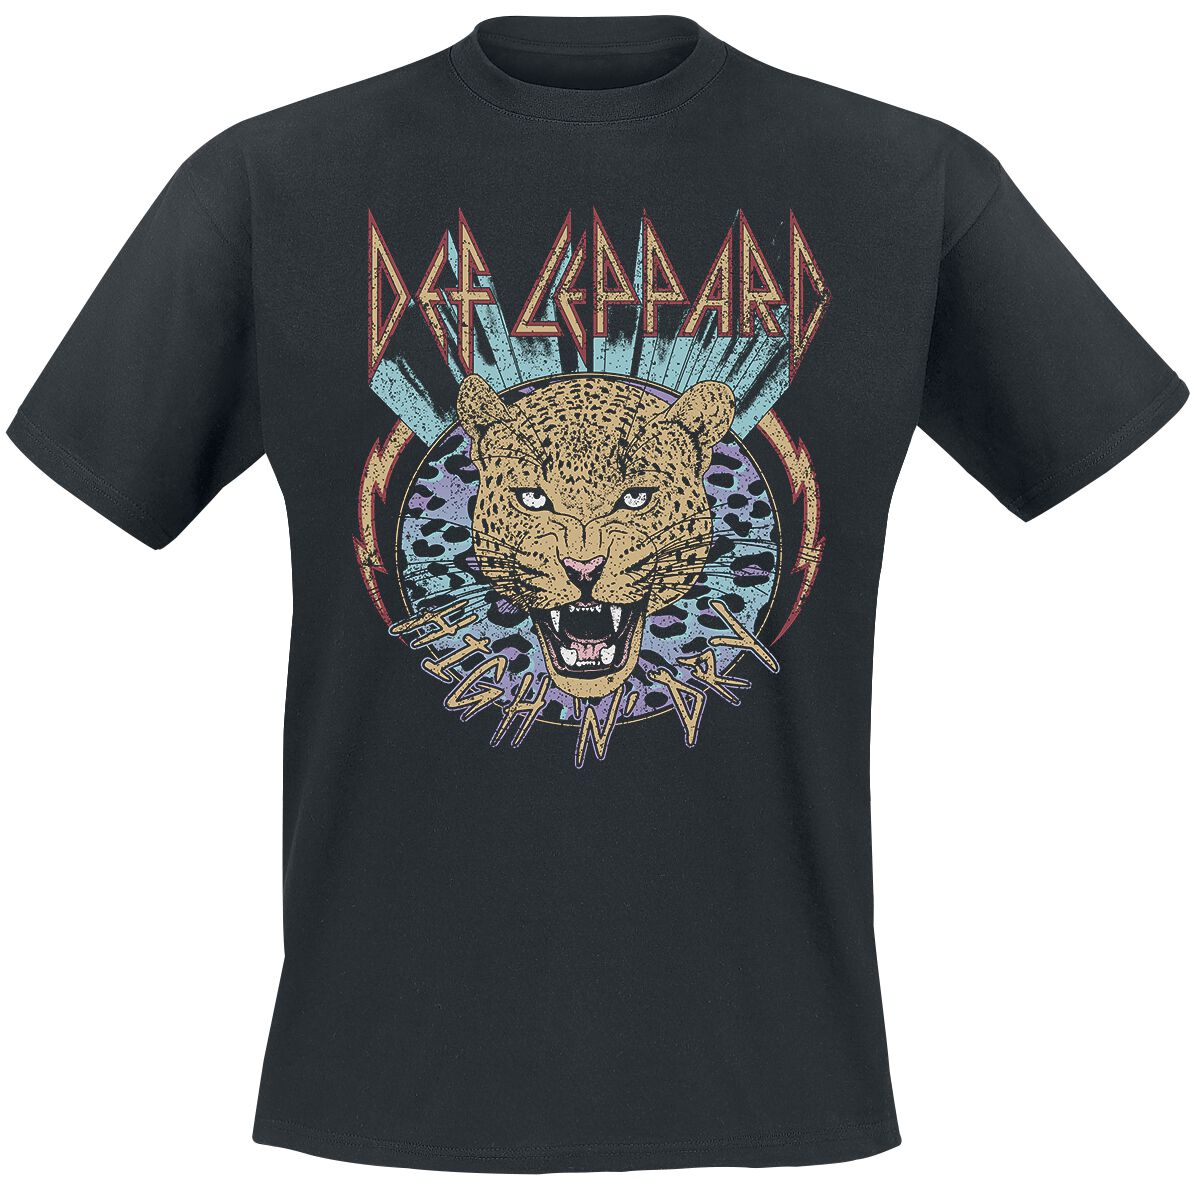 Def Leppard T-Shirt - High N Dry Leopard - M bis 3XL - für Männer - Größe M - schwarz  - Lizenziertes Merchandise!